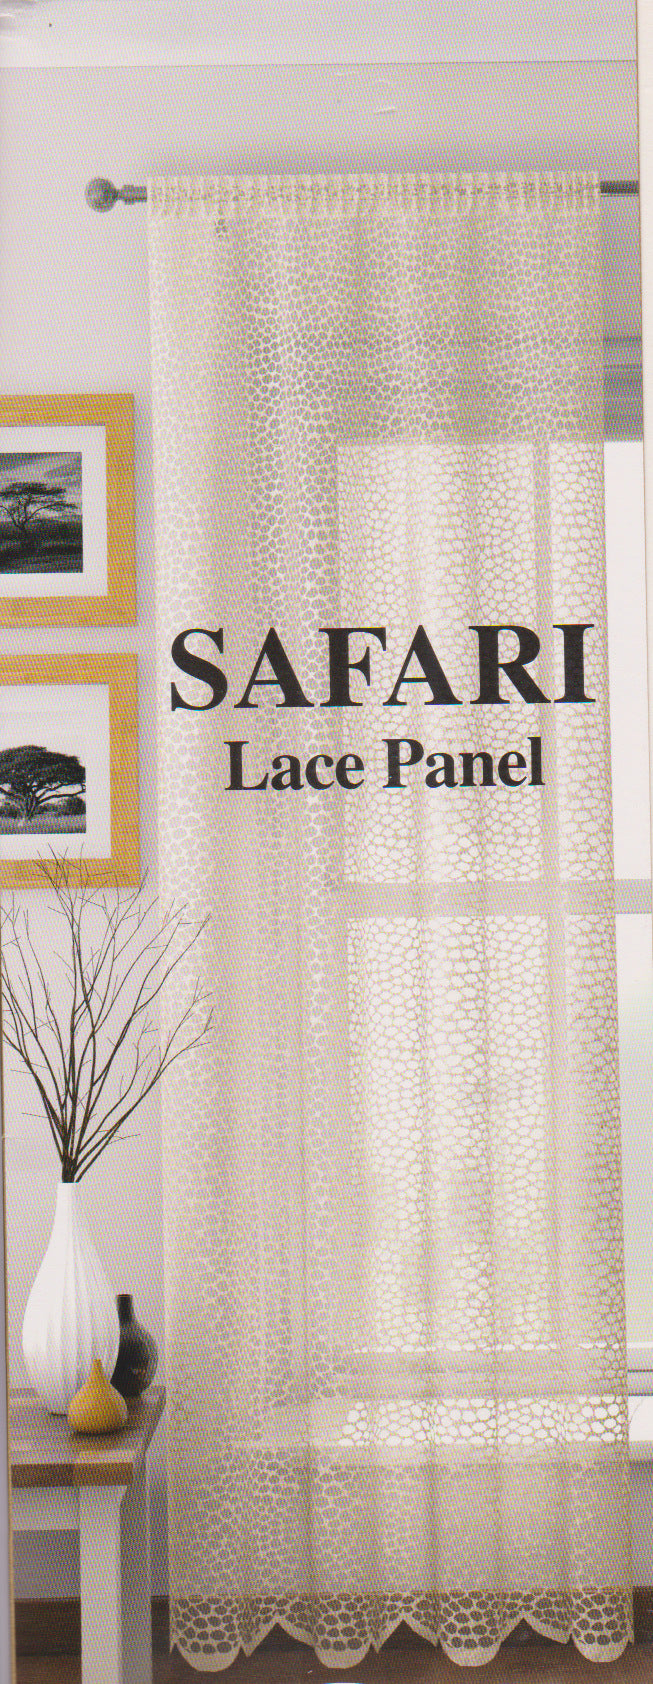 Safari Cream/Champagne Lace Panel